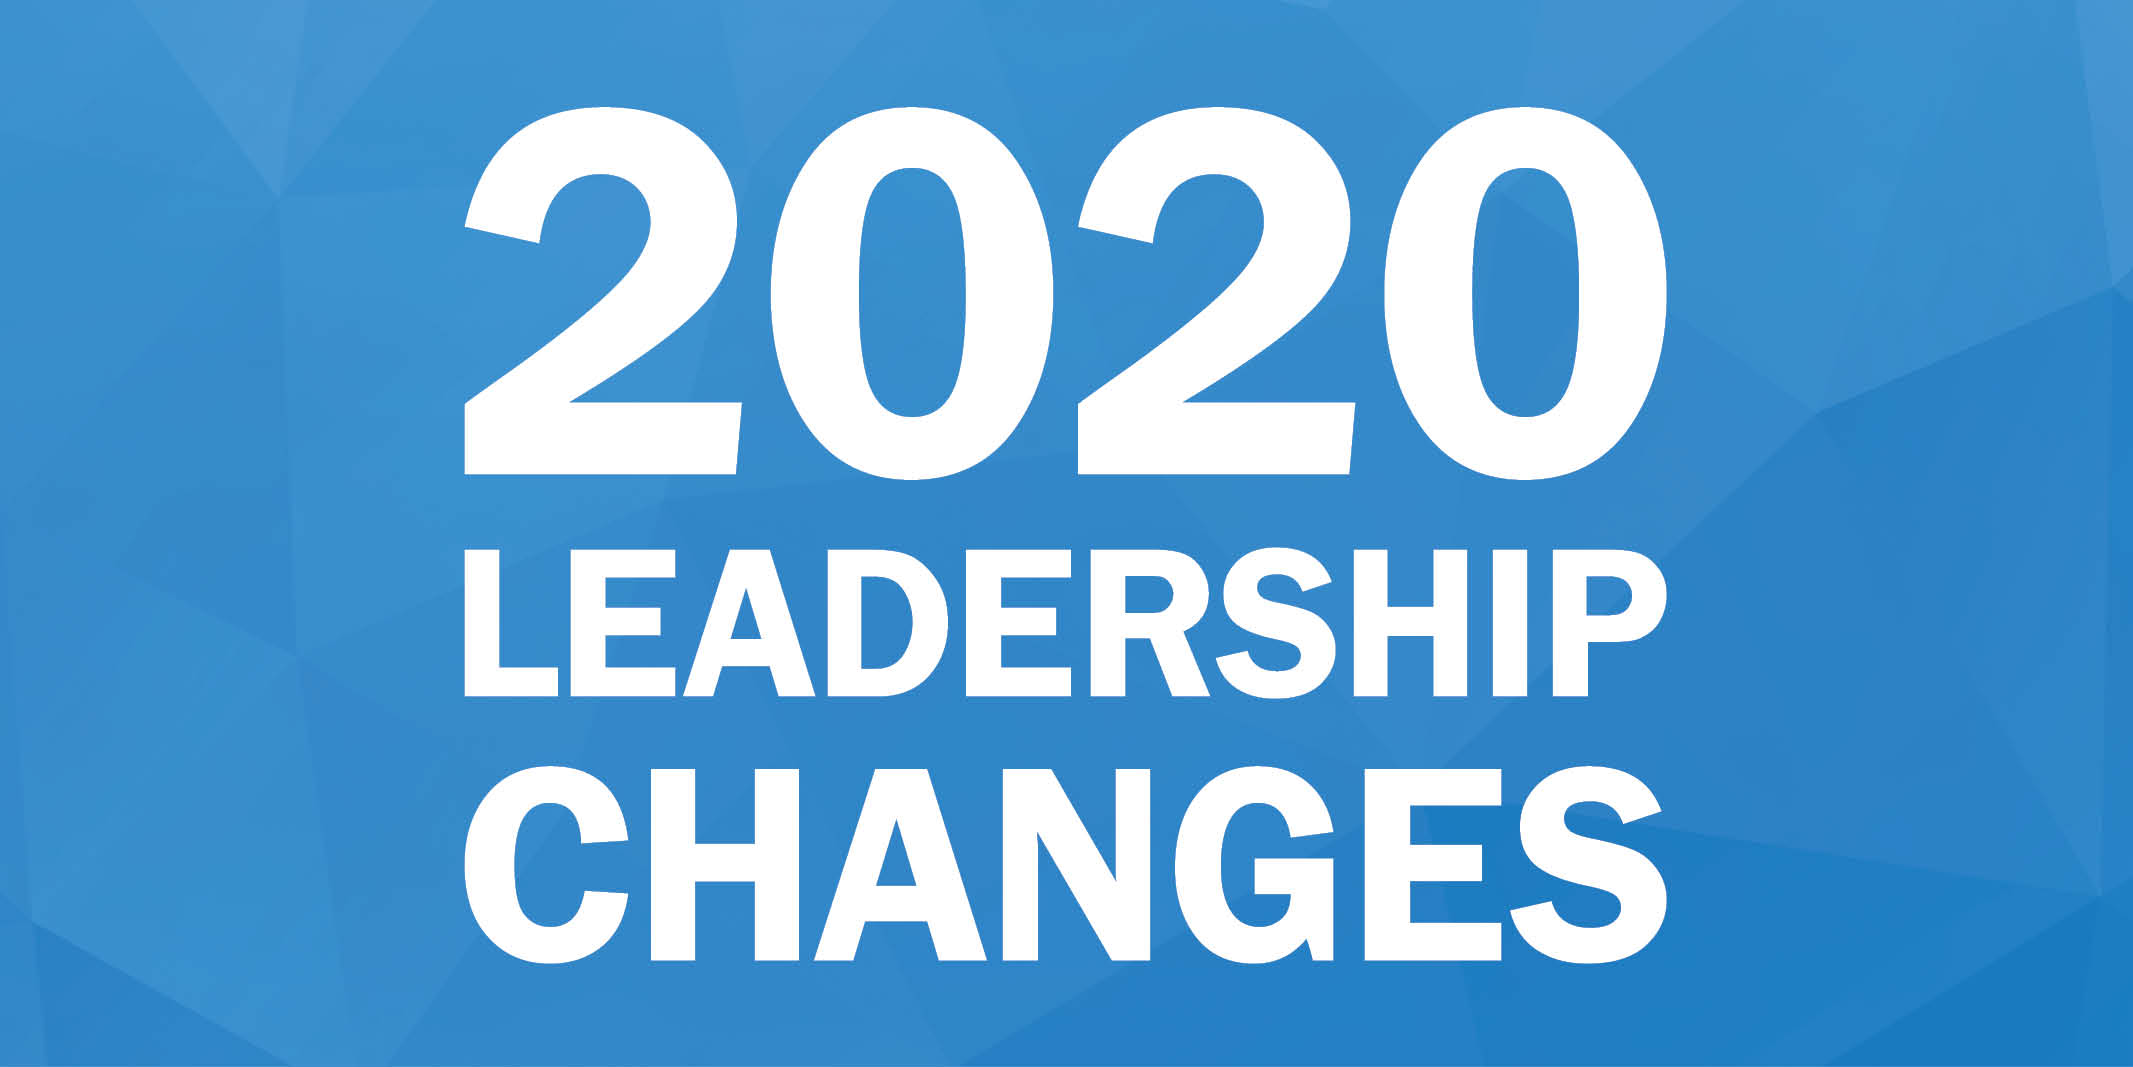 2020 Leadership Changes